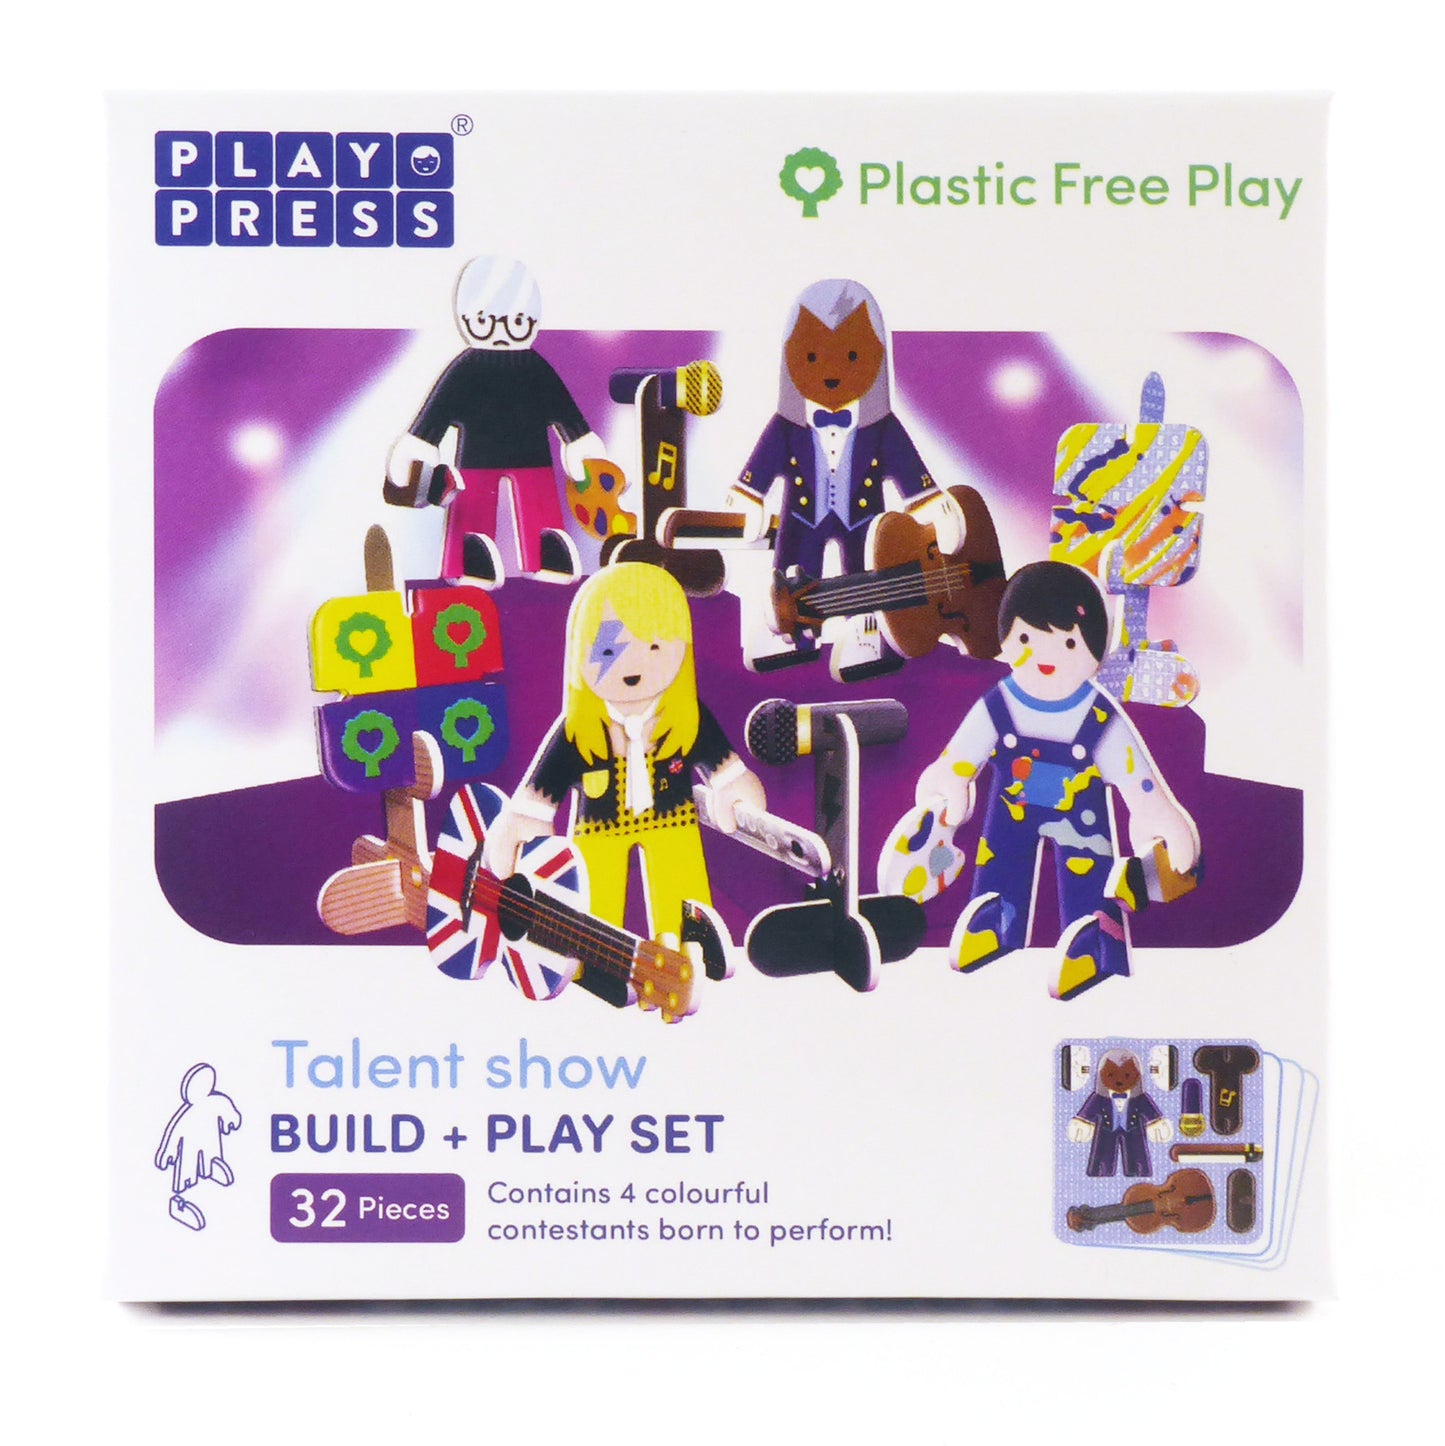 Playpress Eco Friendly Zero Waste Children's Music Artist Painter Rock Show Playset Gift